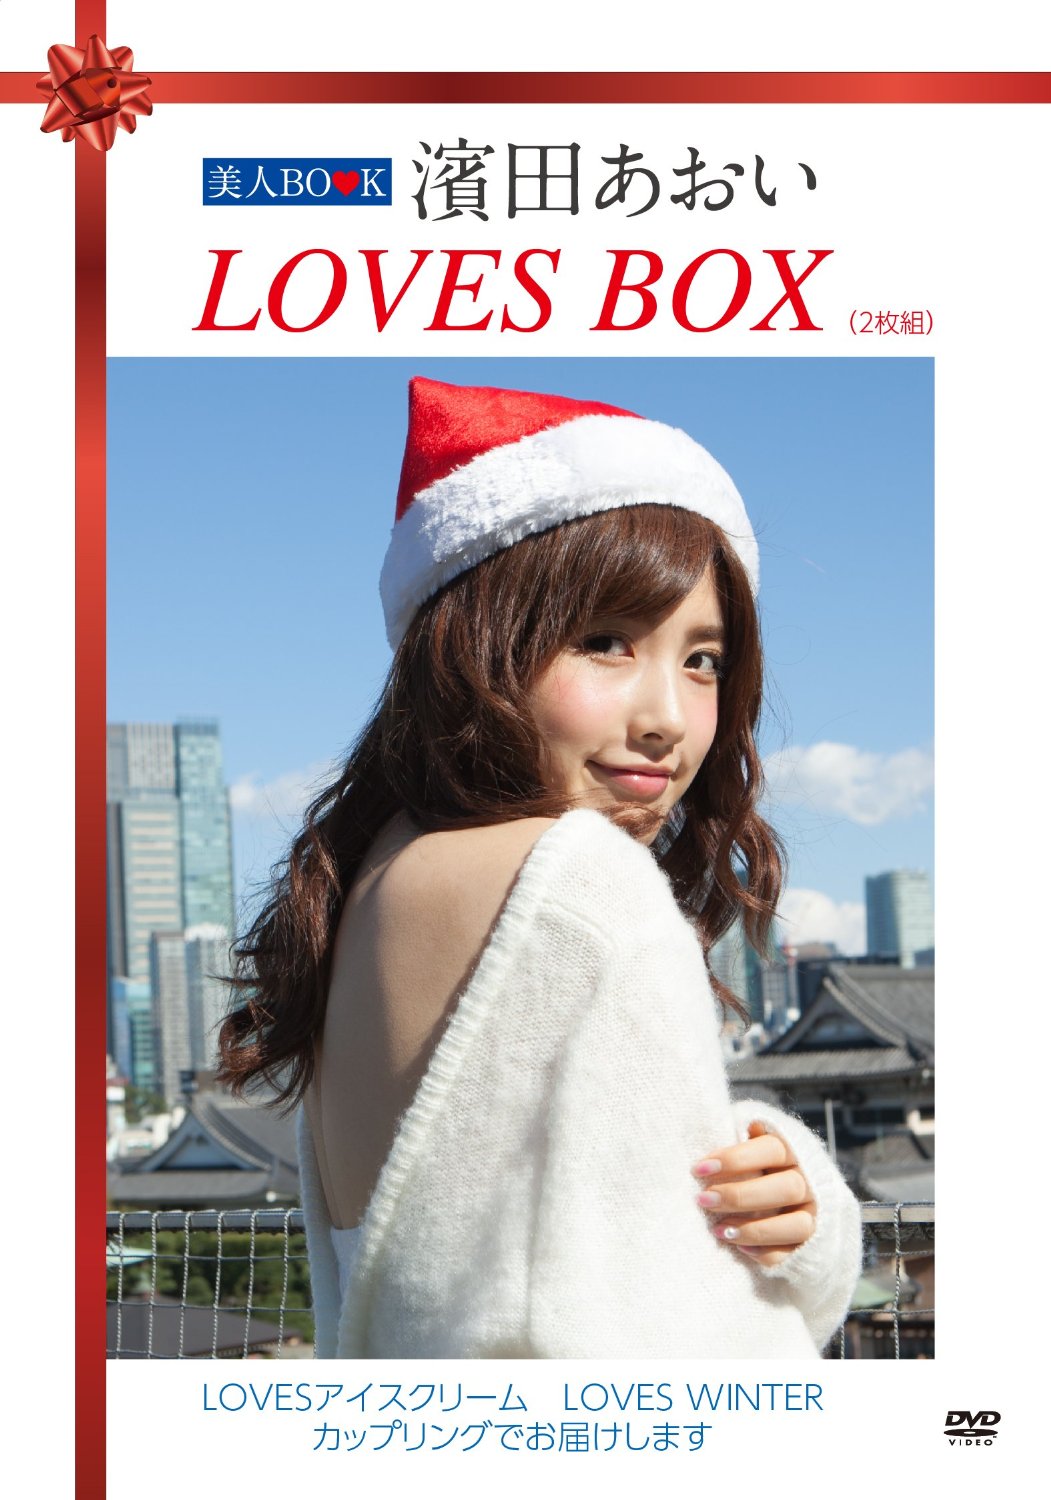 美人BOOK 濱田あおい LOVES BOX(2枚組) [DVD]